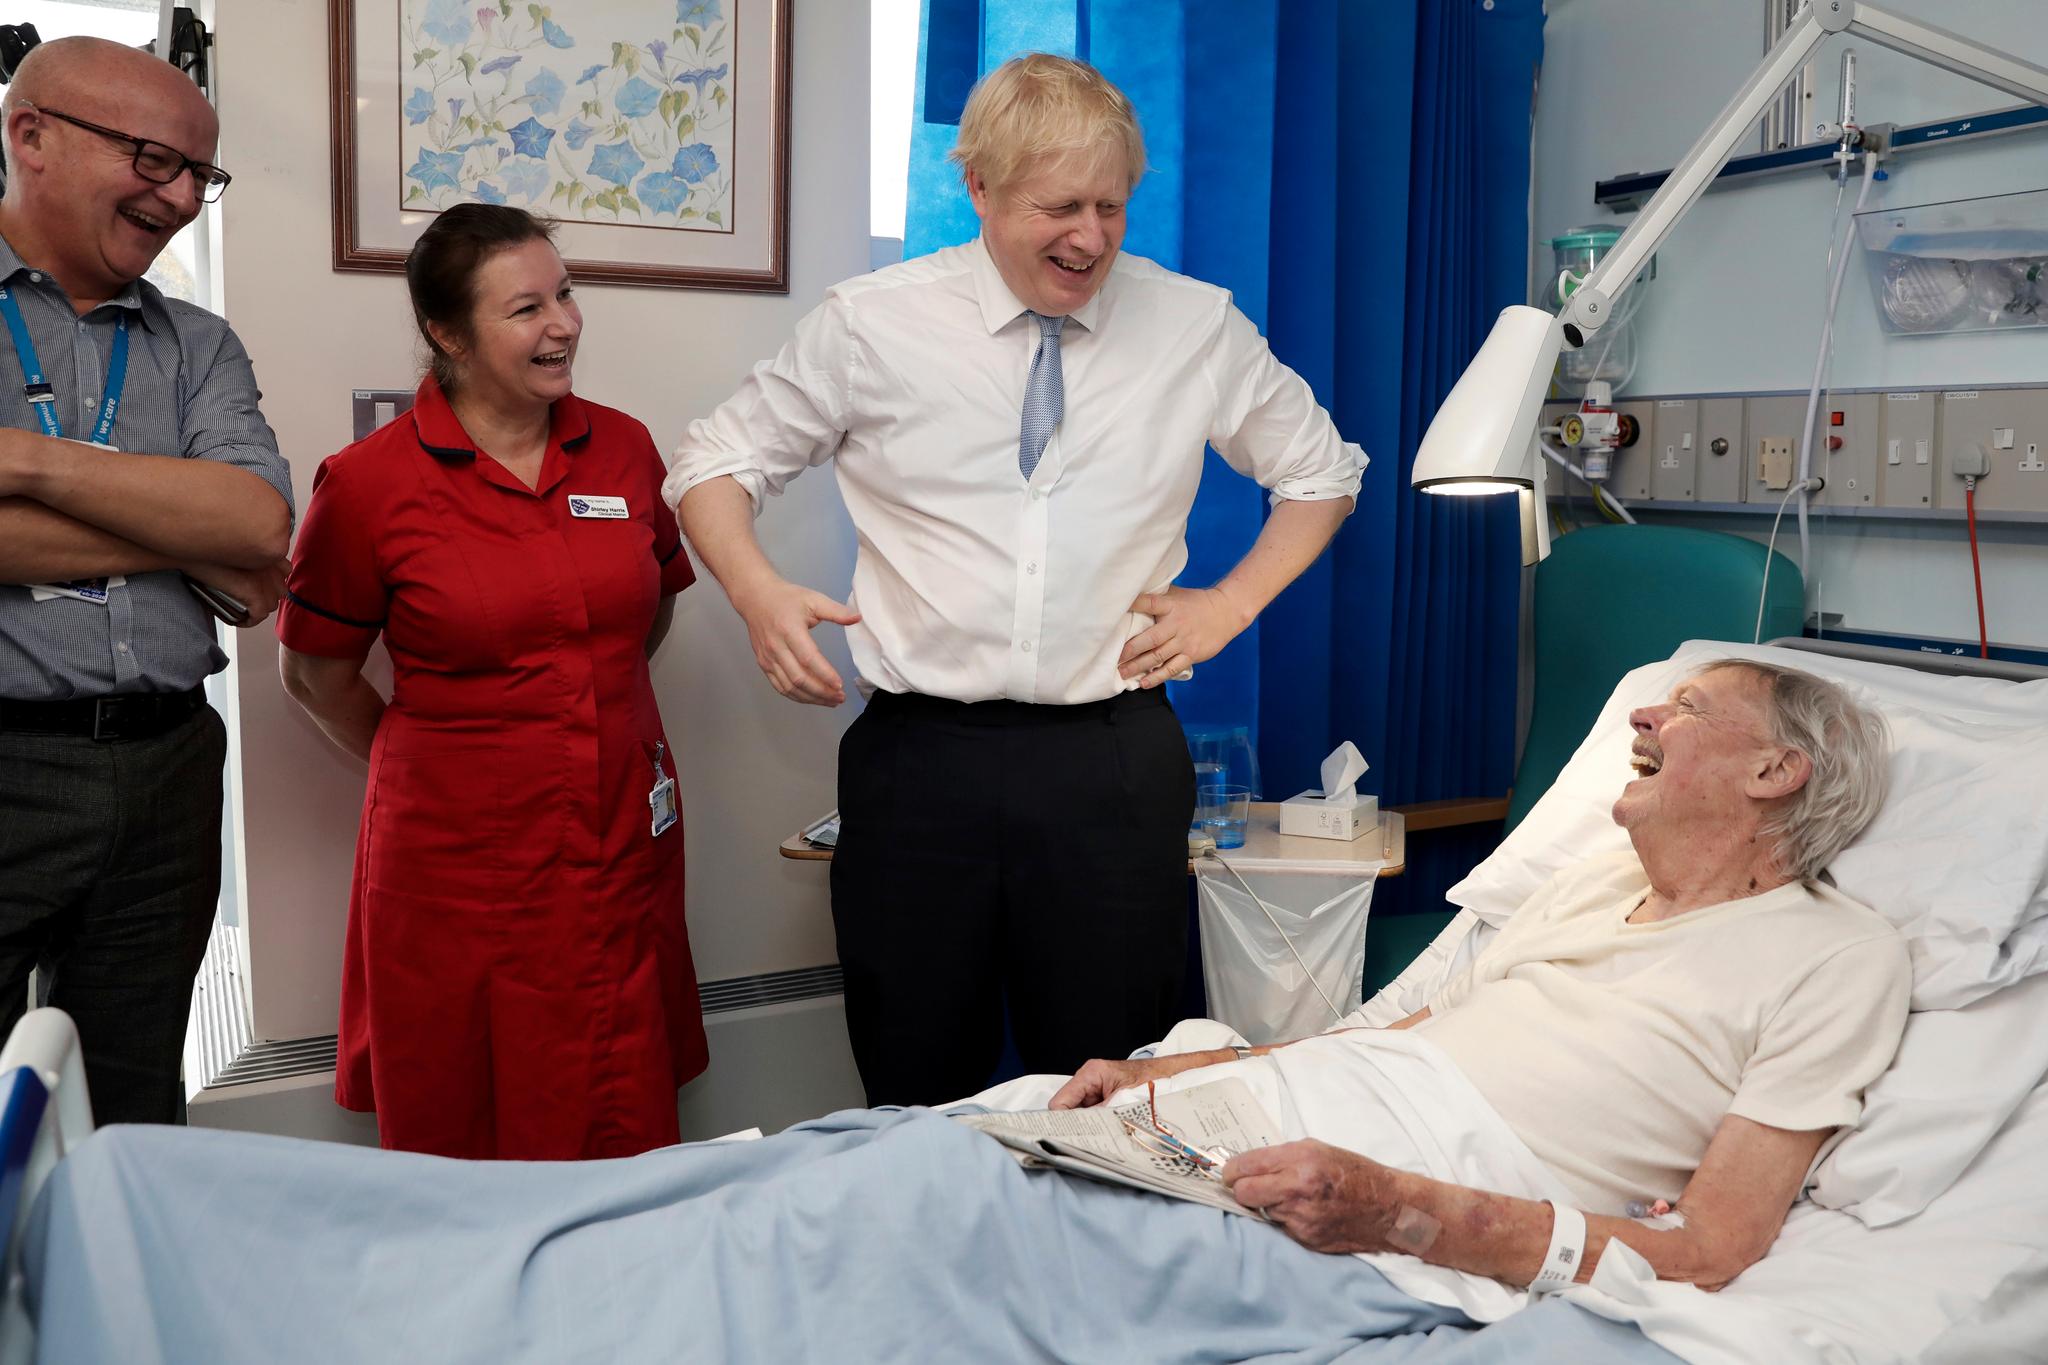 Statsminister Boris Johnson driver valgkamp på sykehus. Meningsmålingene tyder på at han vinner valget i desember. Men også han må be om unnskyldning for gamle uttalelser. 